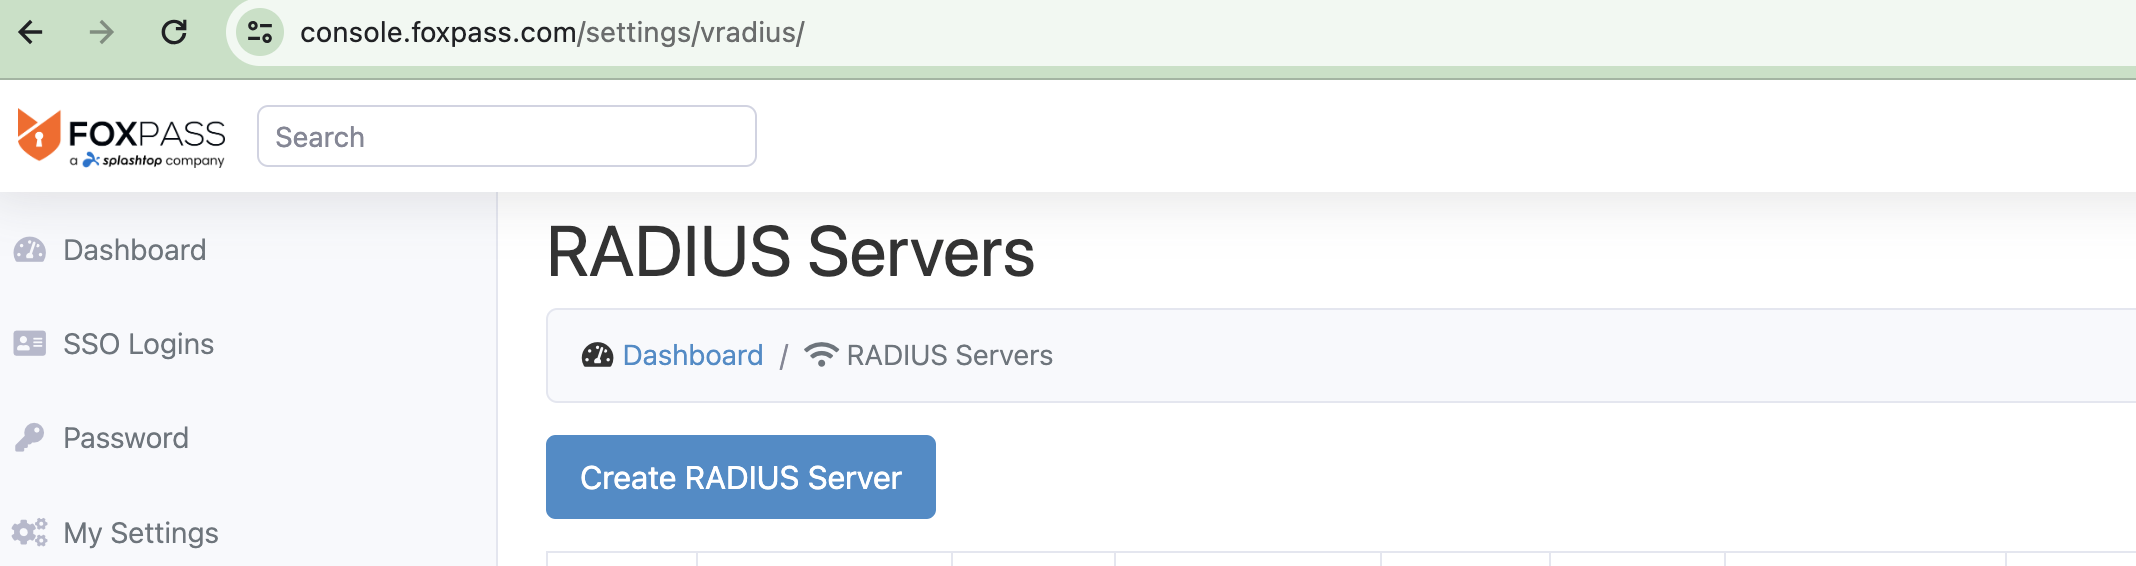 RADIUS Servers page